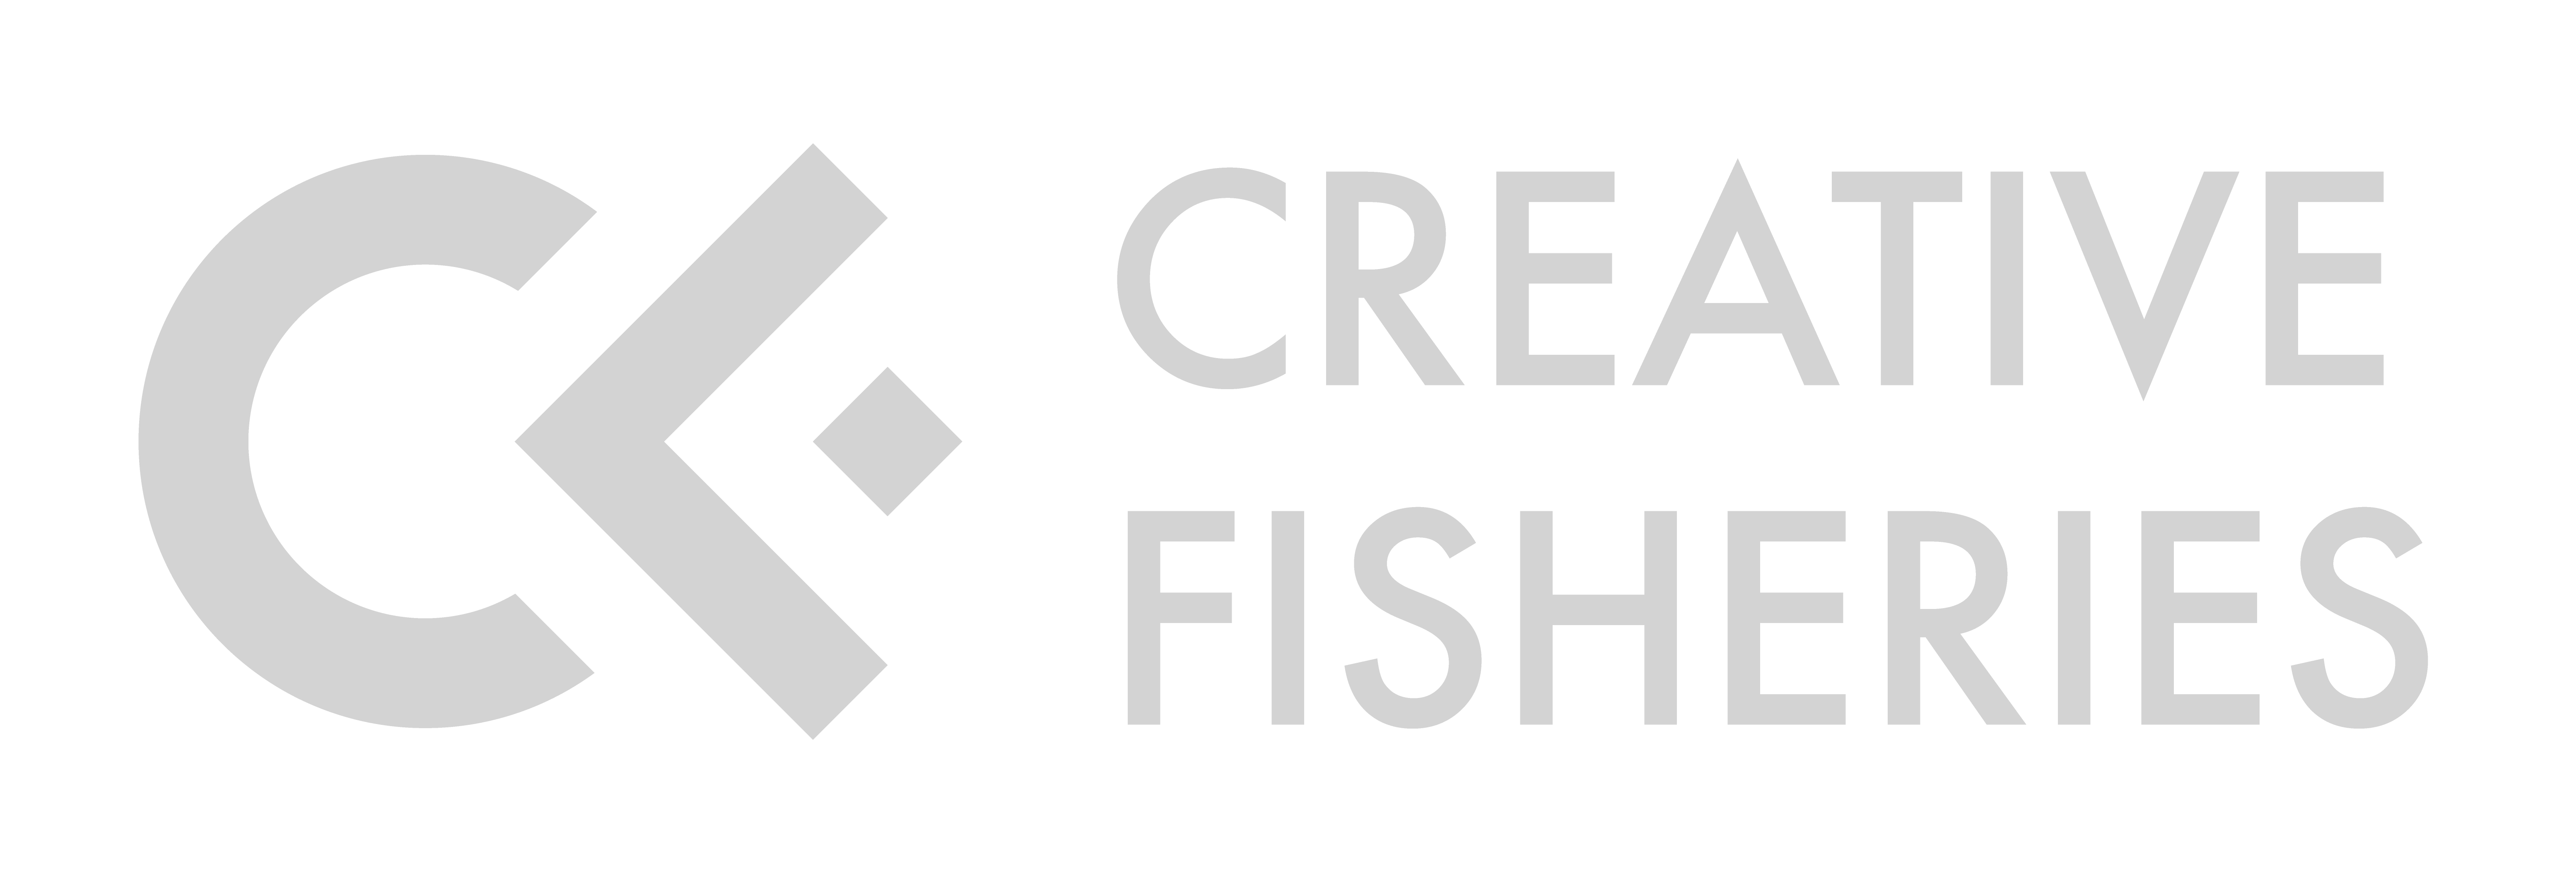 Creative Fisheries